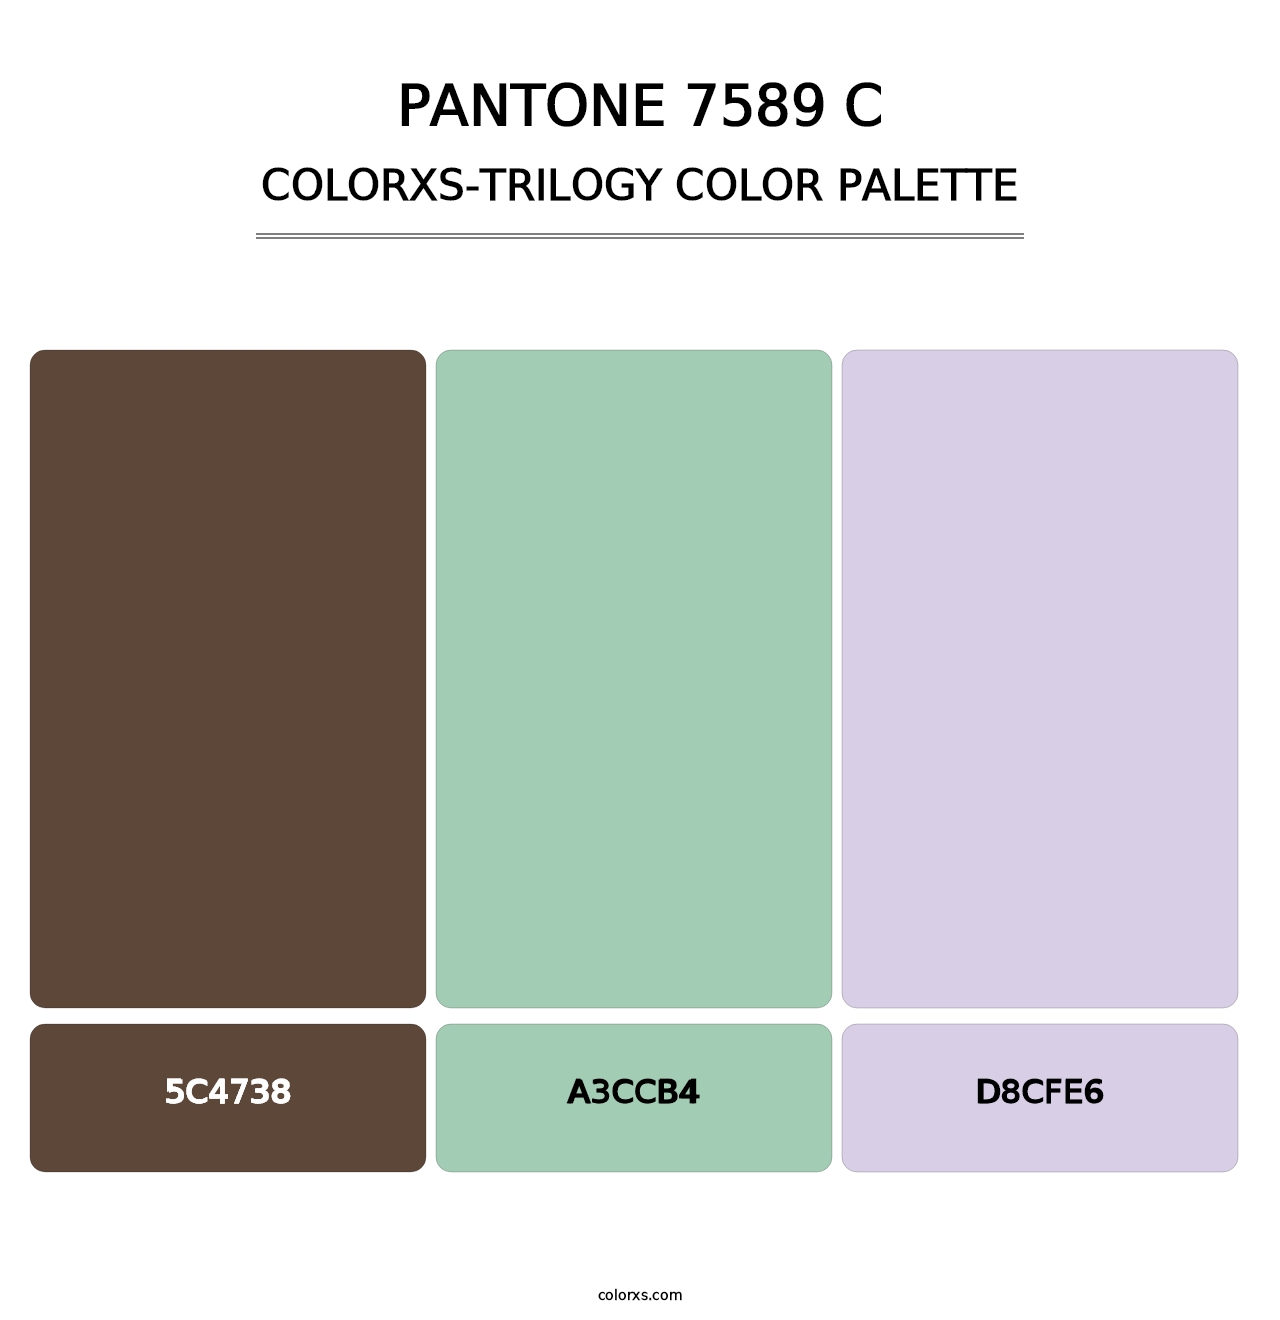 PANTONE 7589 C - Colorxs Trilogy Palette